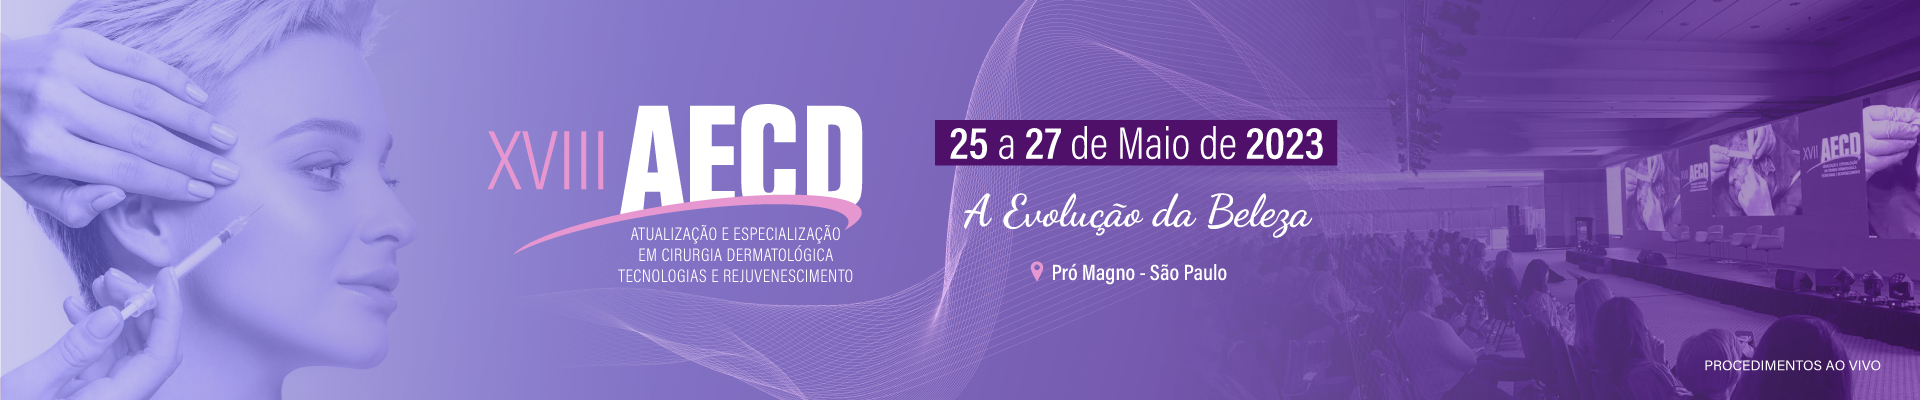 XVIII AECD - Atualização e Especialização em Cirurgia Dermatológica, Tecnologias e Rejuvenescimento